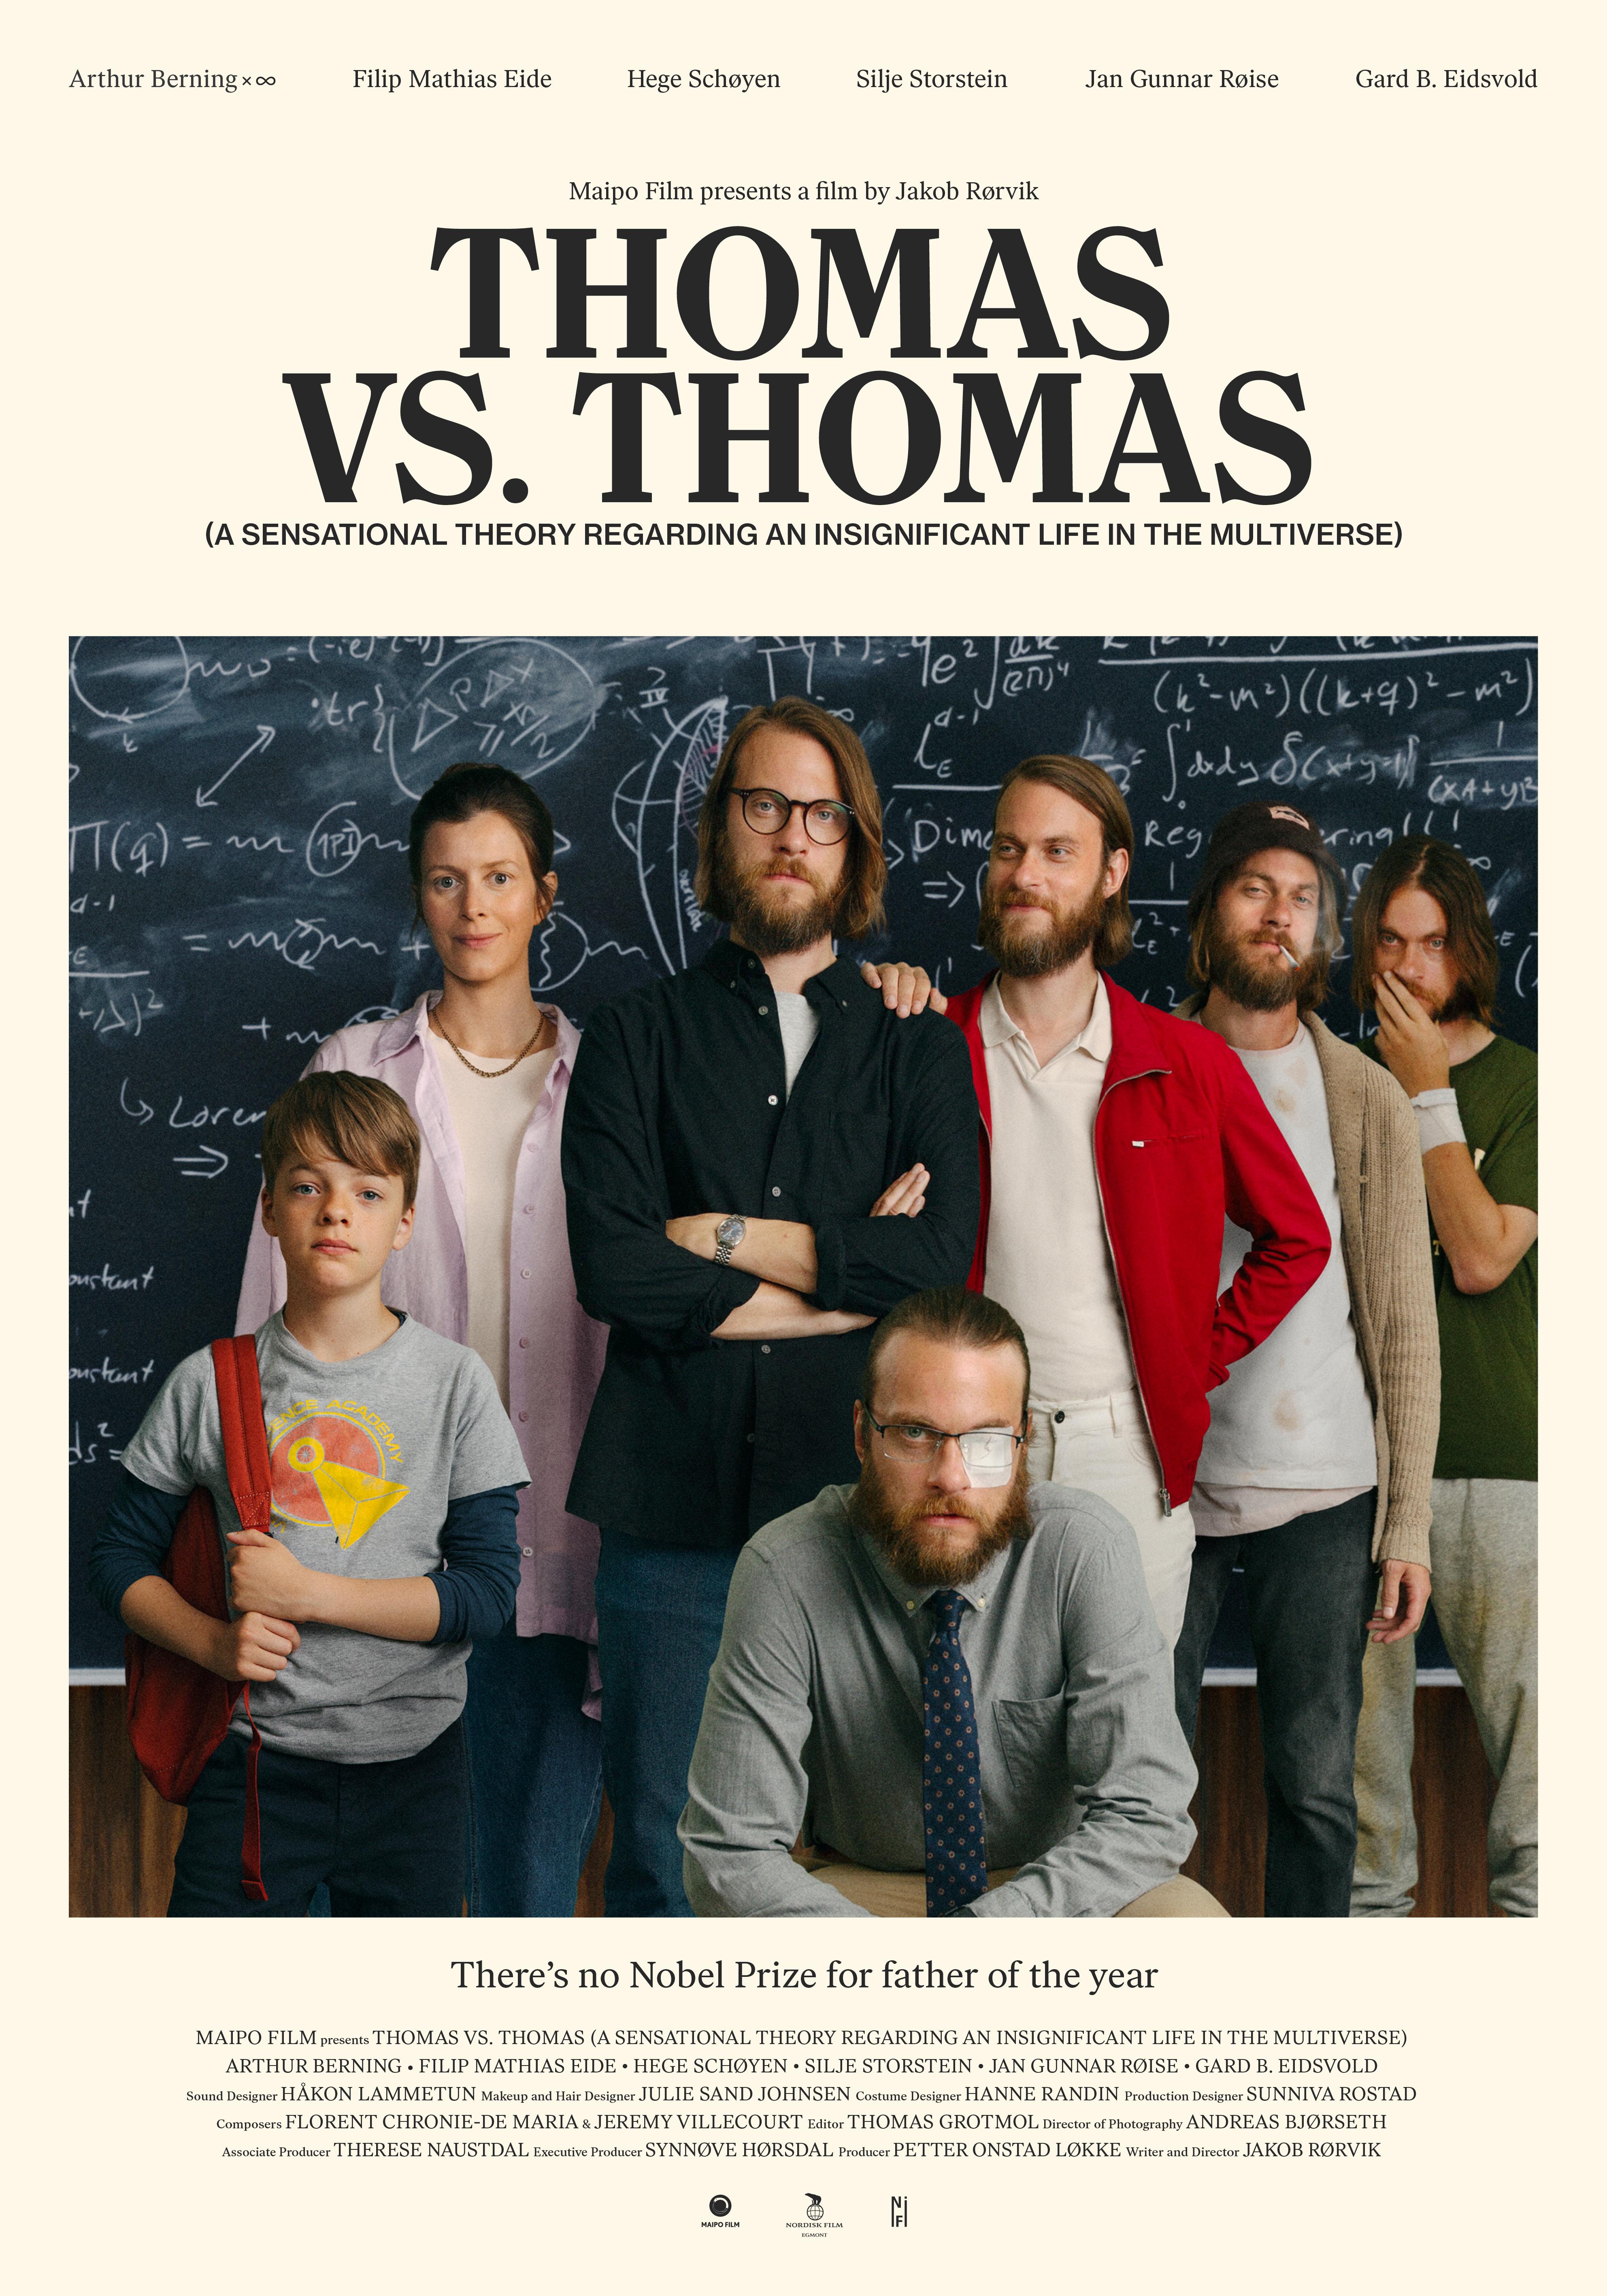 Thomas mot Thomas (en sensasjonell teori om det ubetydelige livet i multiverset) (2022) постер